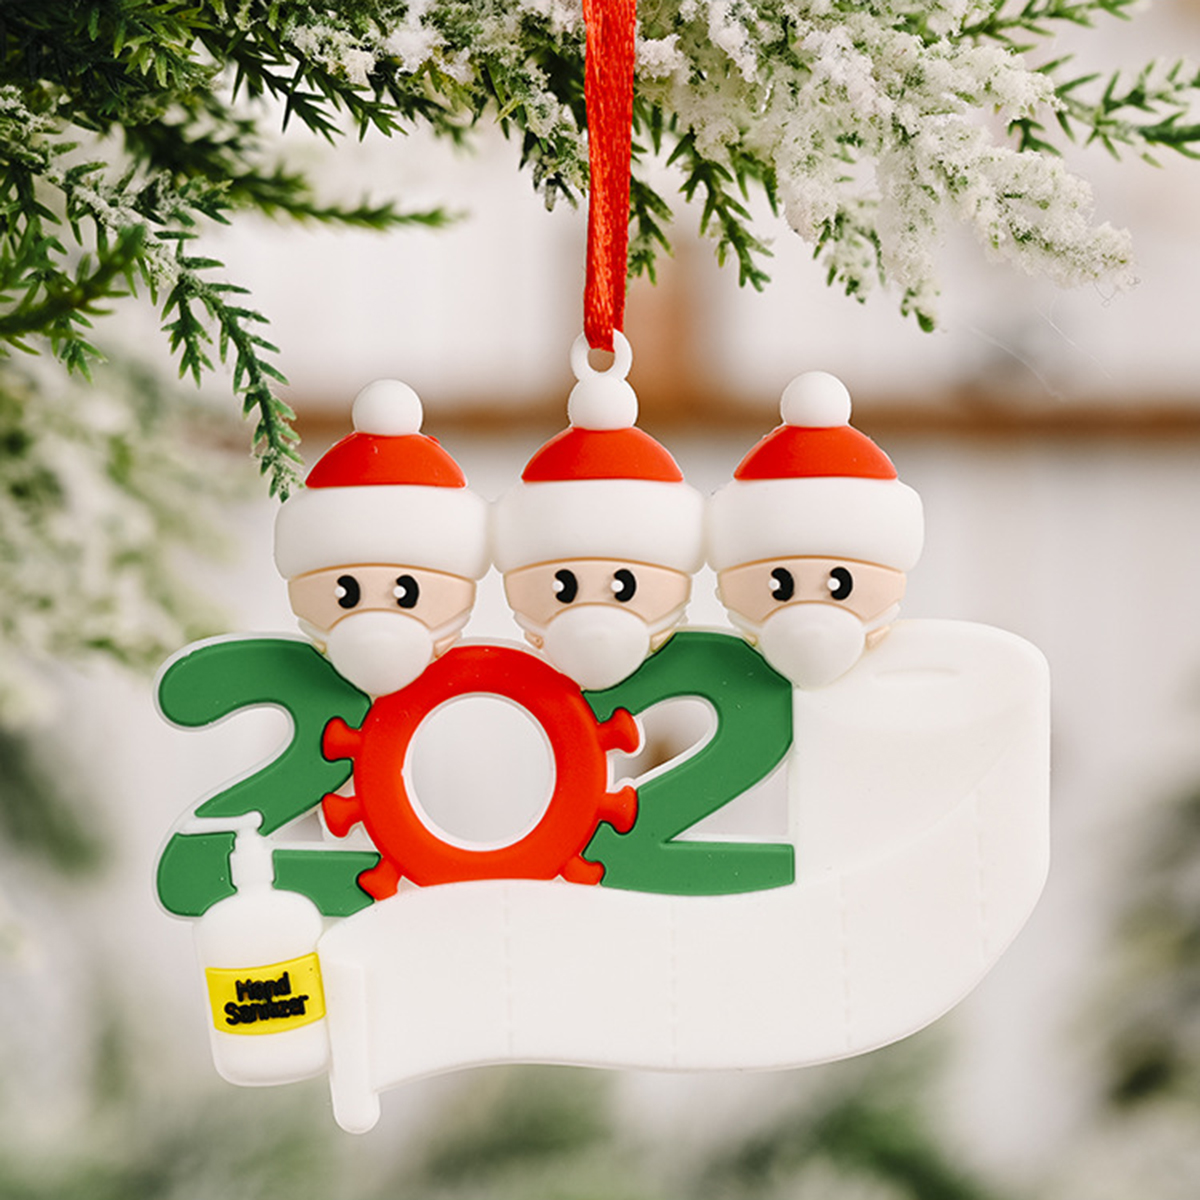 Mask-Santa-Snowman-Ornament-DIY-Name-Greetings-Christmas-Tree-Ornament-for-Christmas-Tree-Decoration-1786417-6